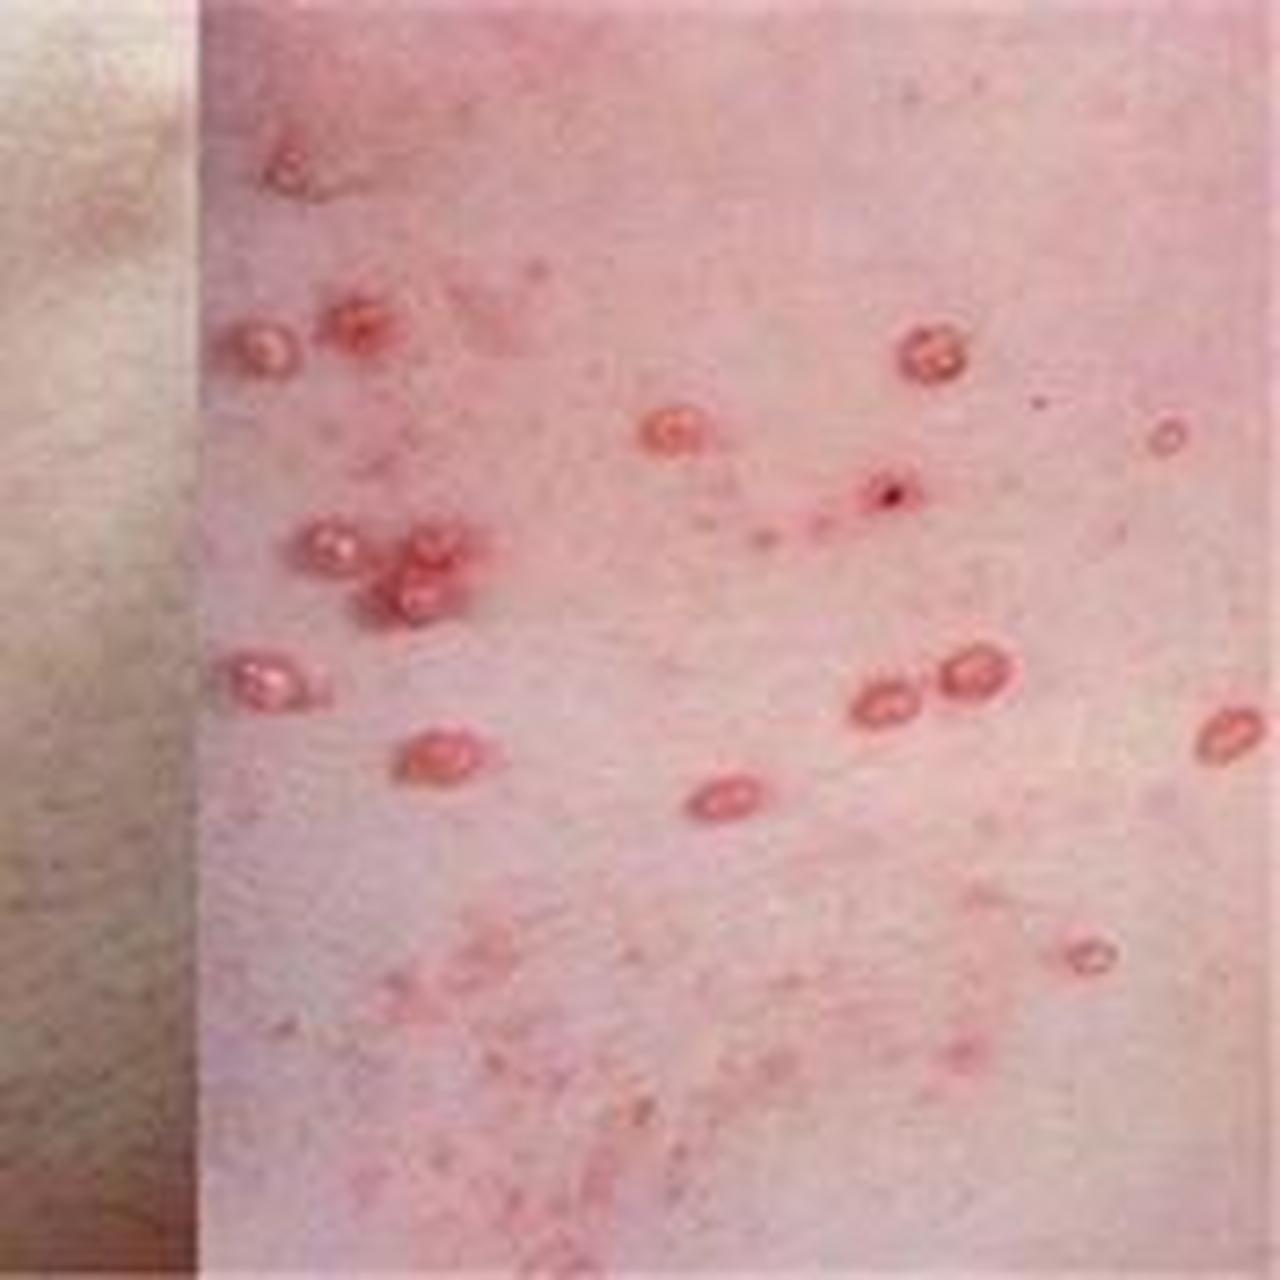 系结核杆菌通过皮肤破损直接感染后引起的增殖性皮肤损害.